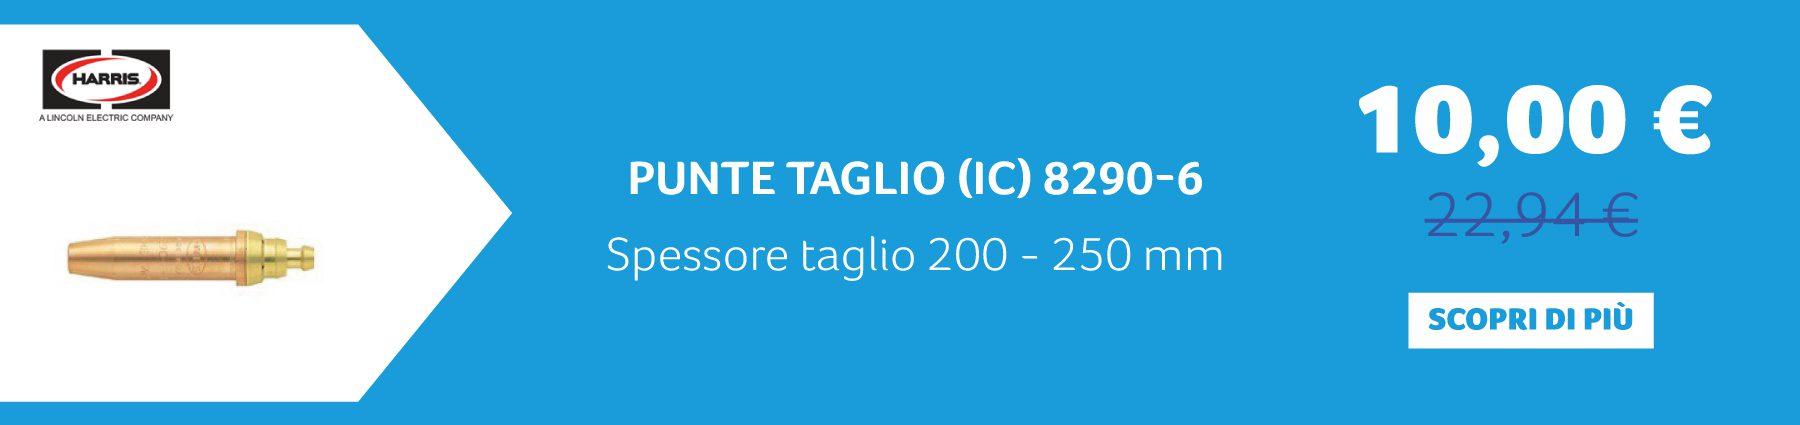 Harris - PUNTE TAGLIO (IC) 8290-6 Spessore taglio 200 - 250 mm. 10,00 € anziché 22,94 €